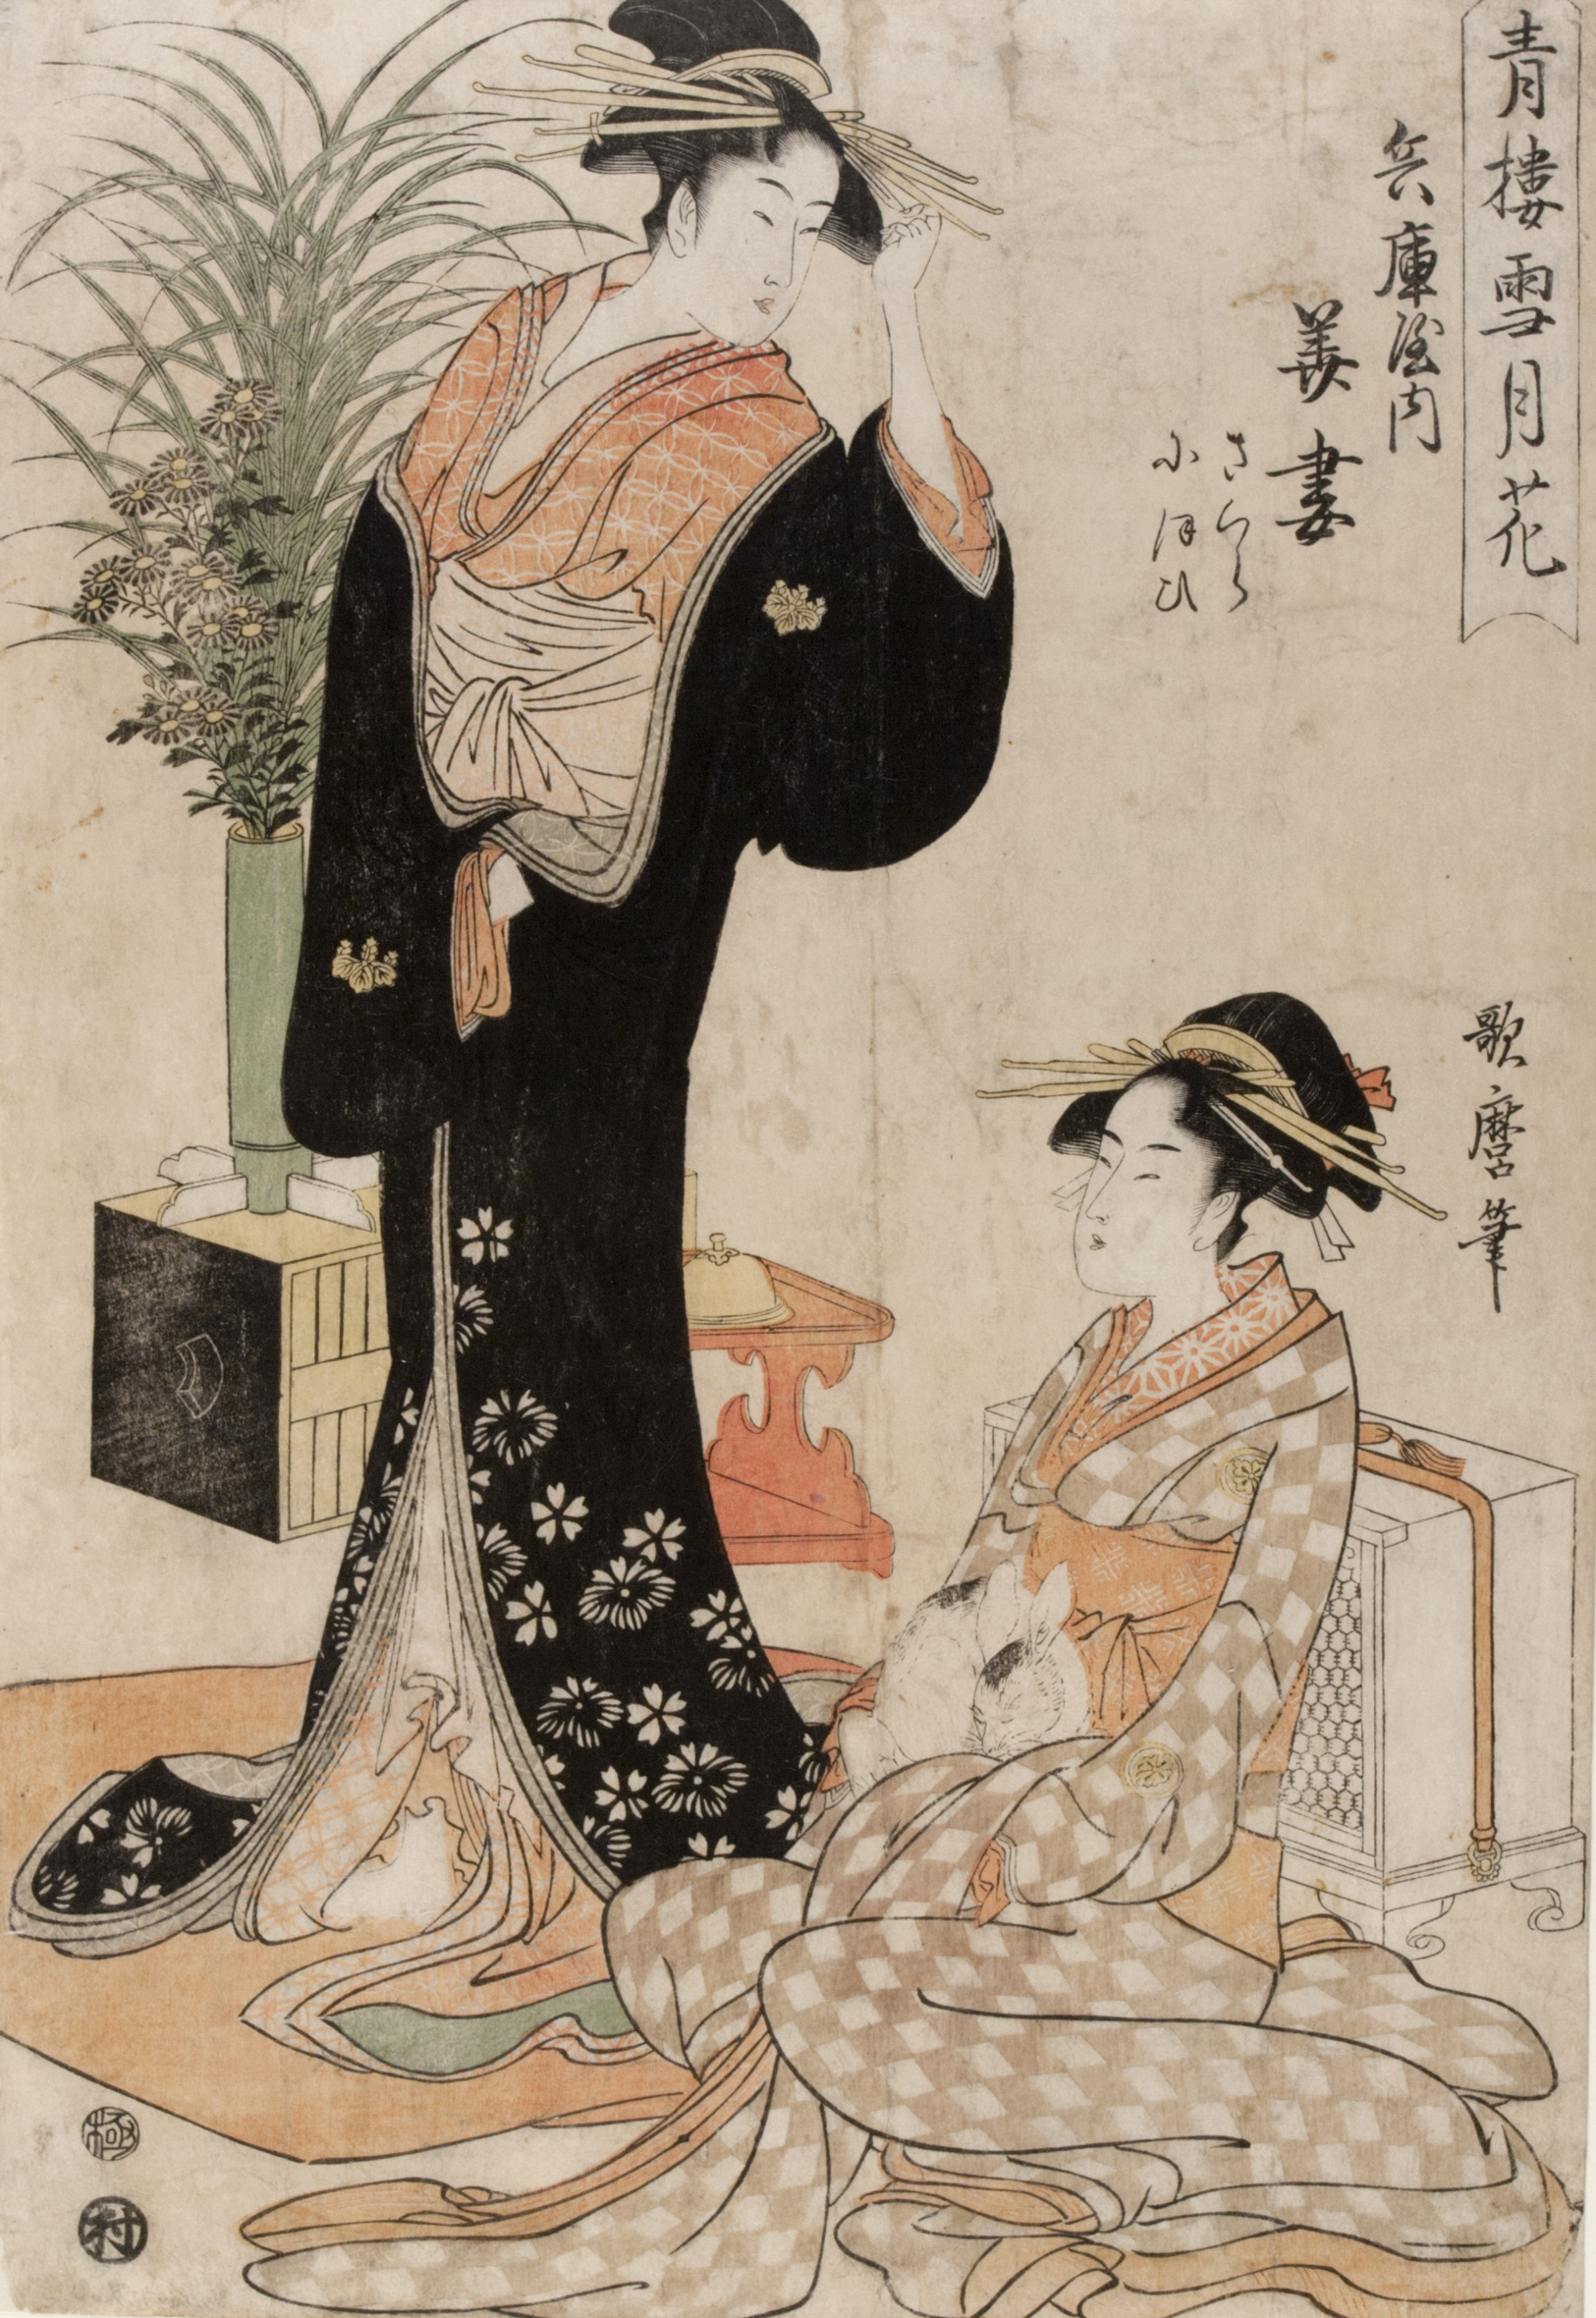 青楼雪月花 by 歌麿 喜多川 - 1793 